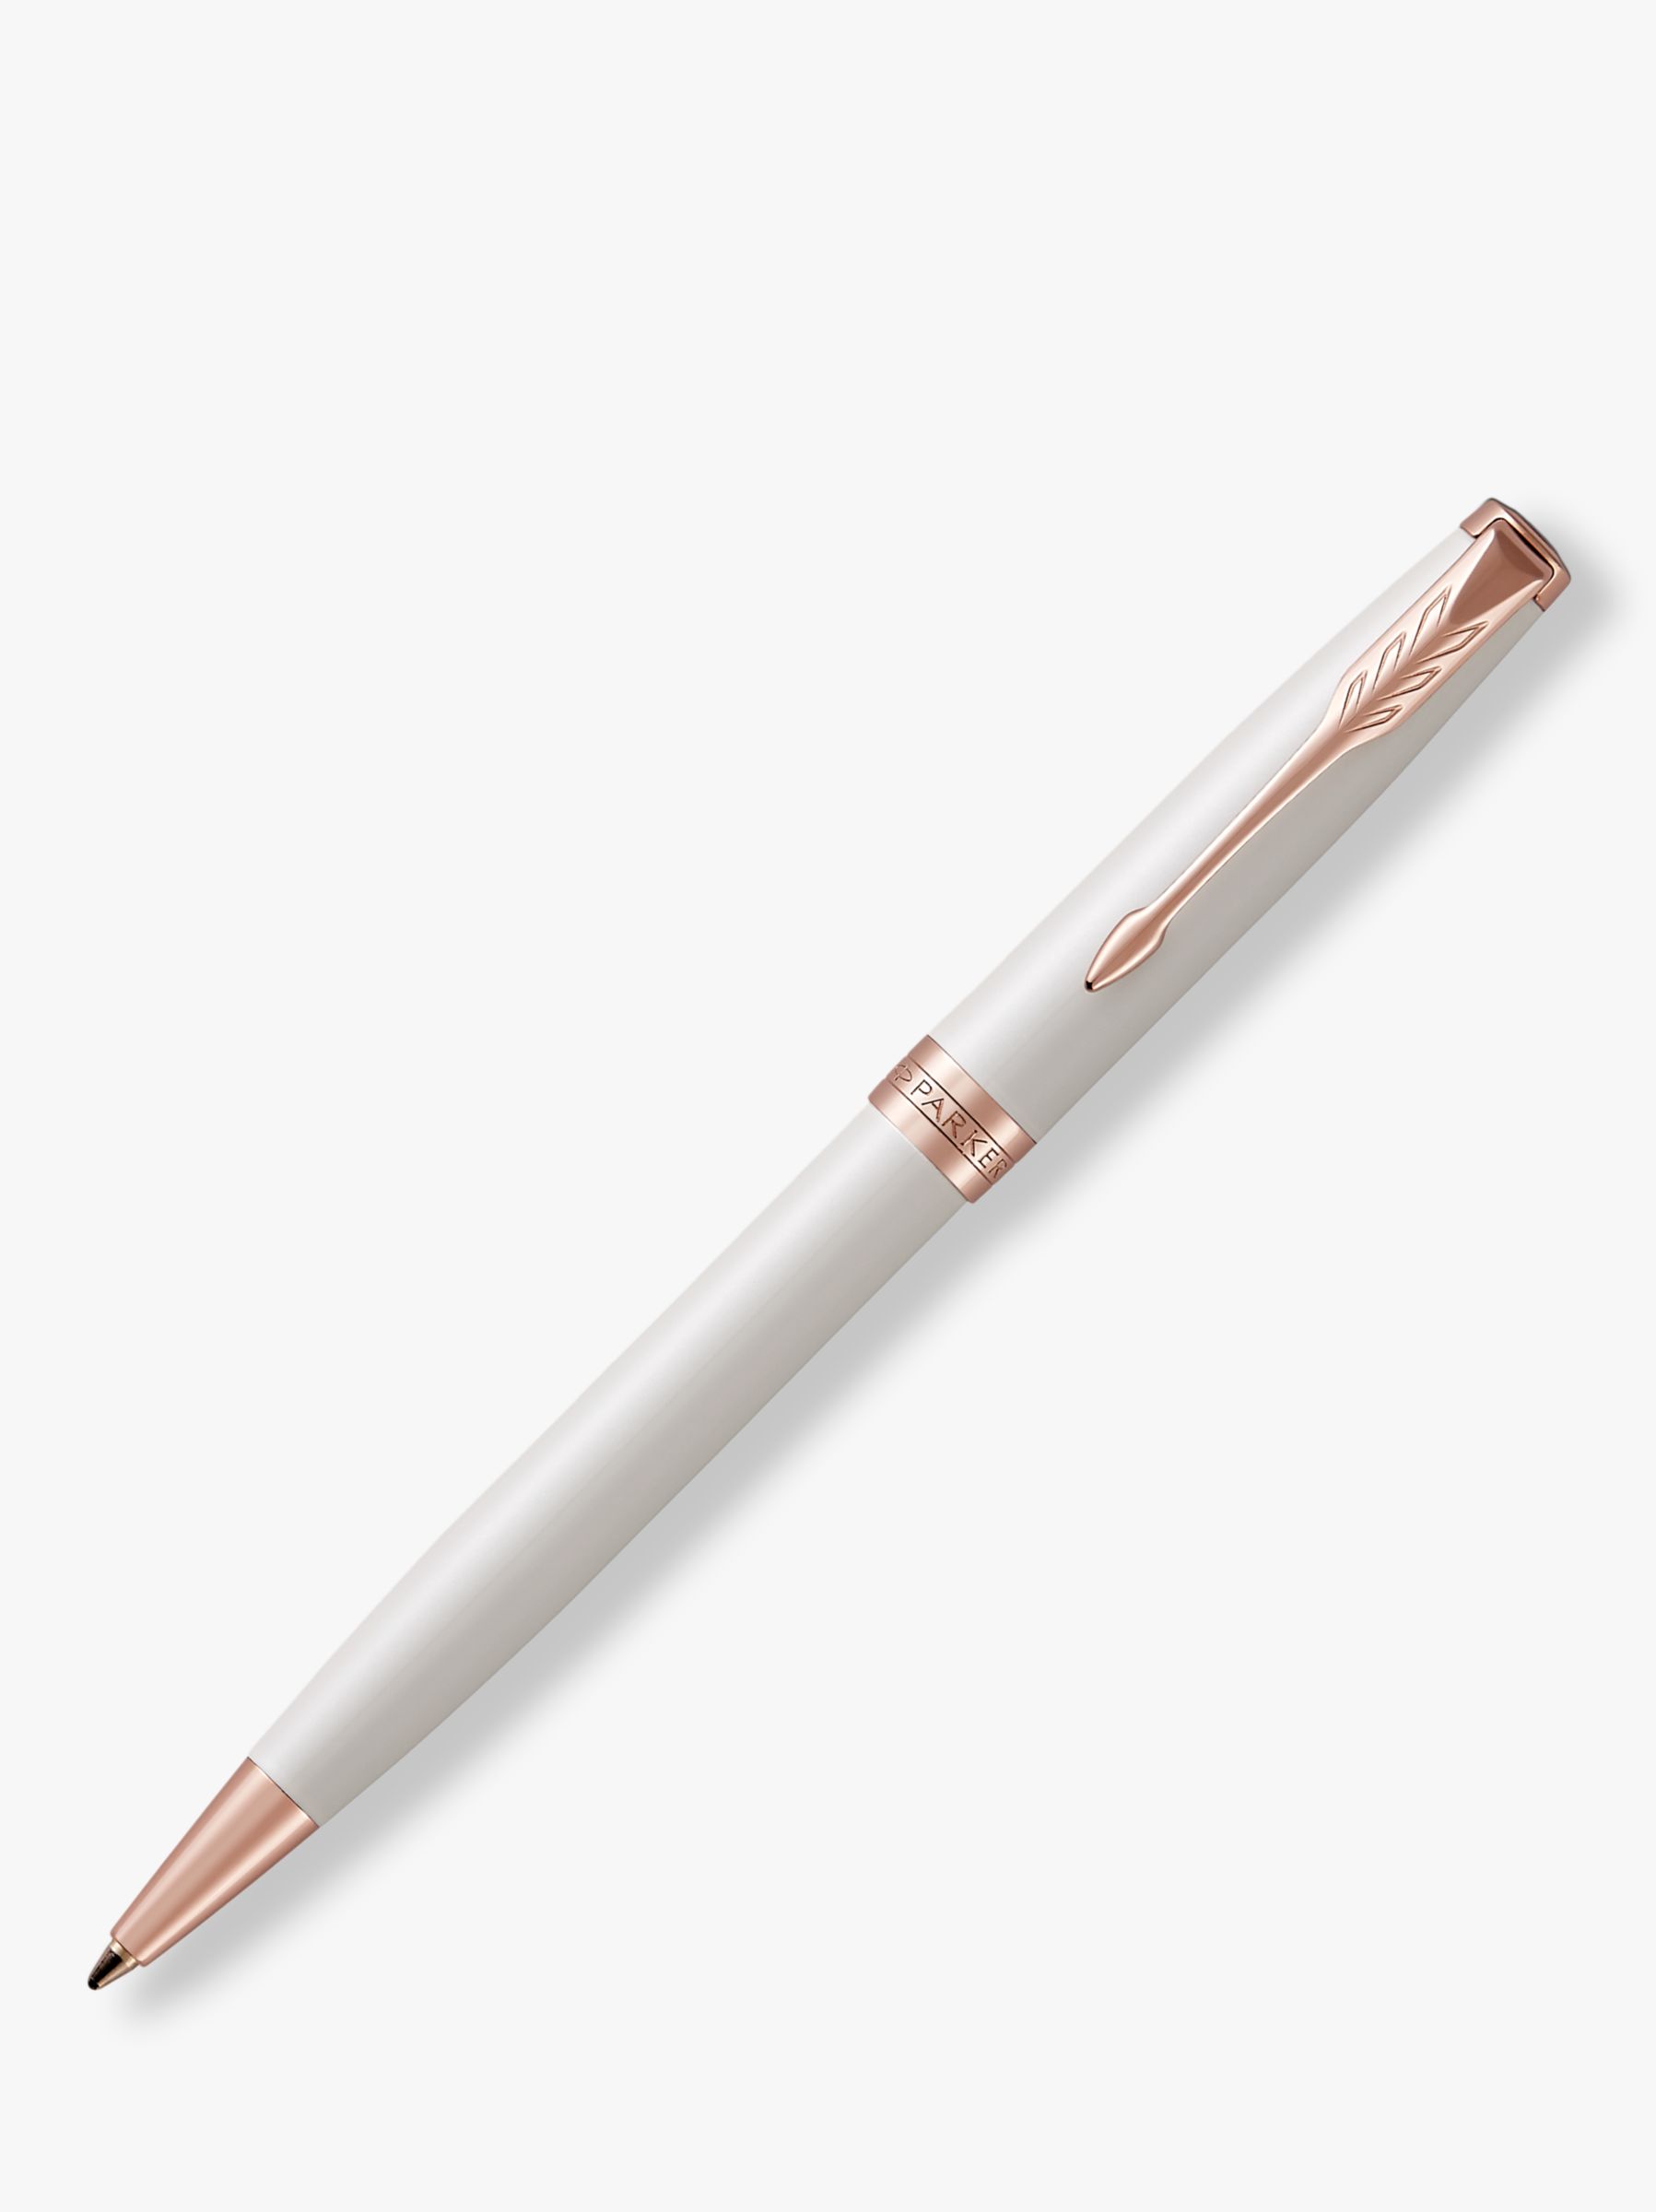 PARKER Sonnet Lacquer Ballpoint Pen, Pearl/Rose Gold